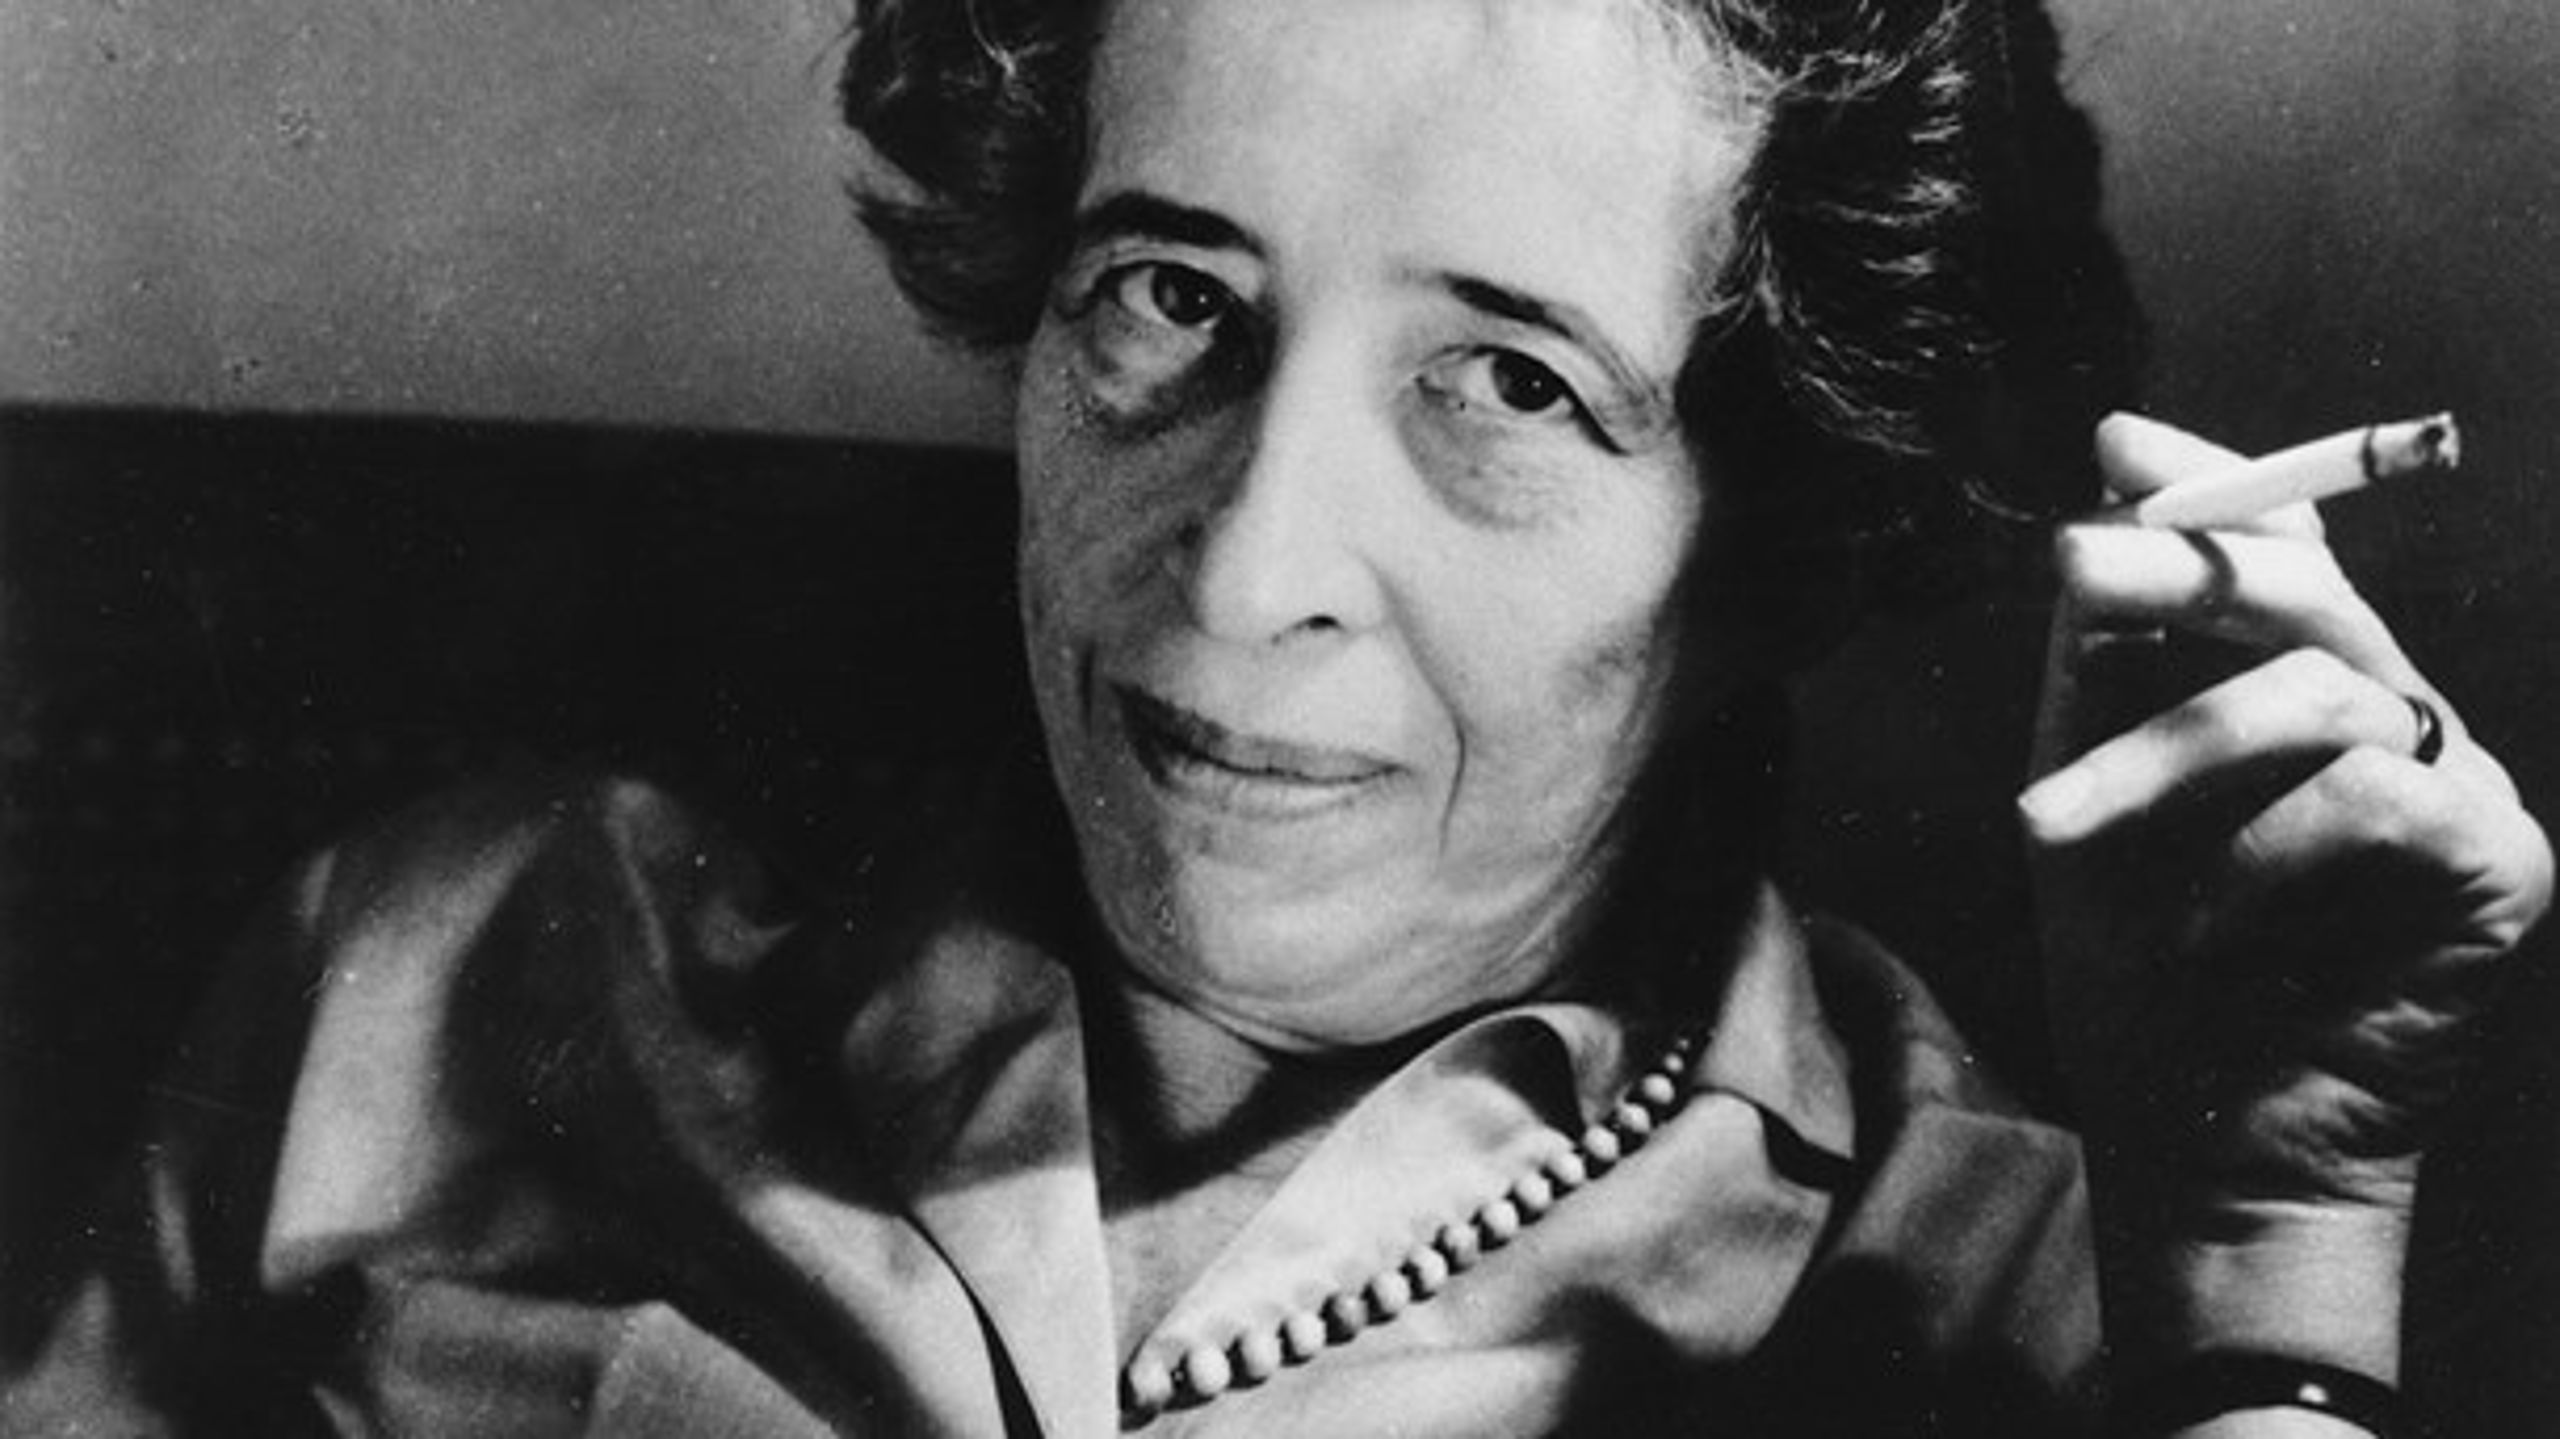 Filosoffen Hannah Arendt beskrev mekanismen, hvordan almindelige funktionærer kan forledes til at medvirke til ondskab, når det personlige ansvar tilsidesættes,&nbsp;som ”ondskabens banalitet”.